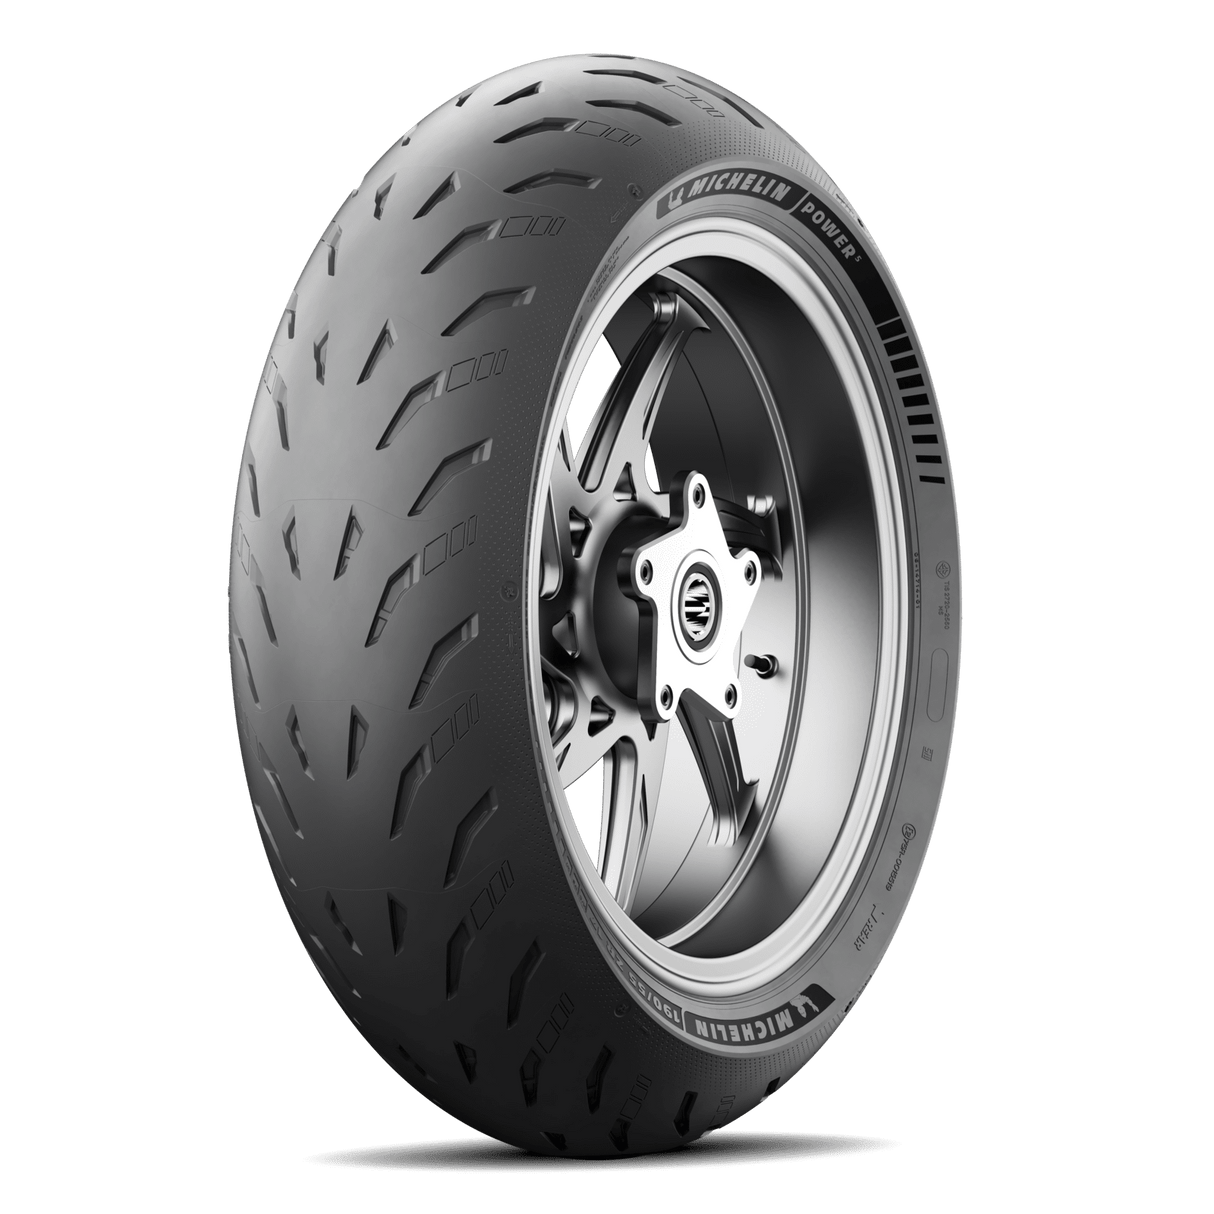 Michelin Power 5 190/55 ZR 17 (73W) Rear Tyre